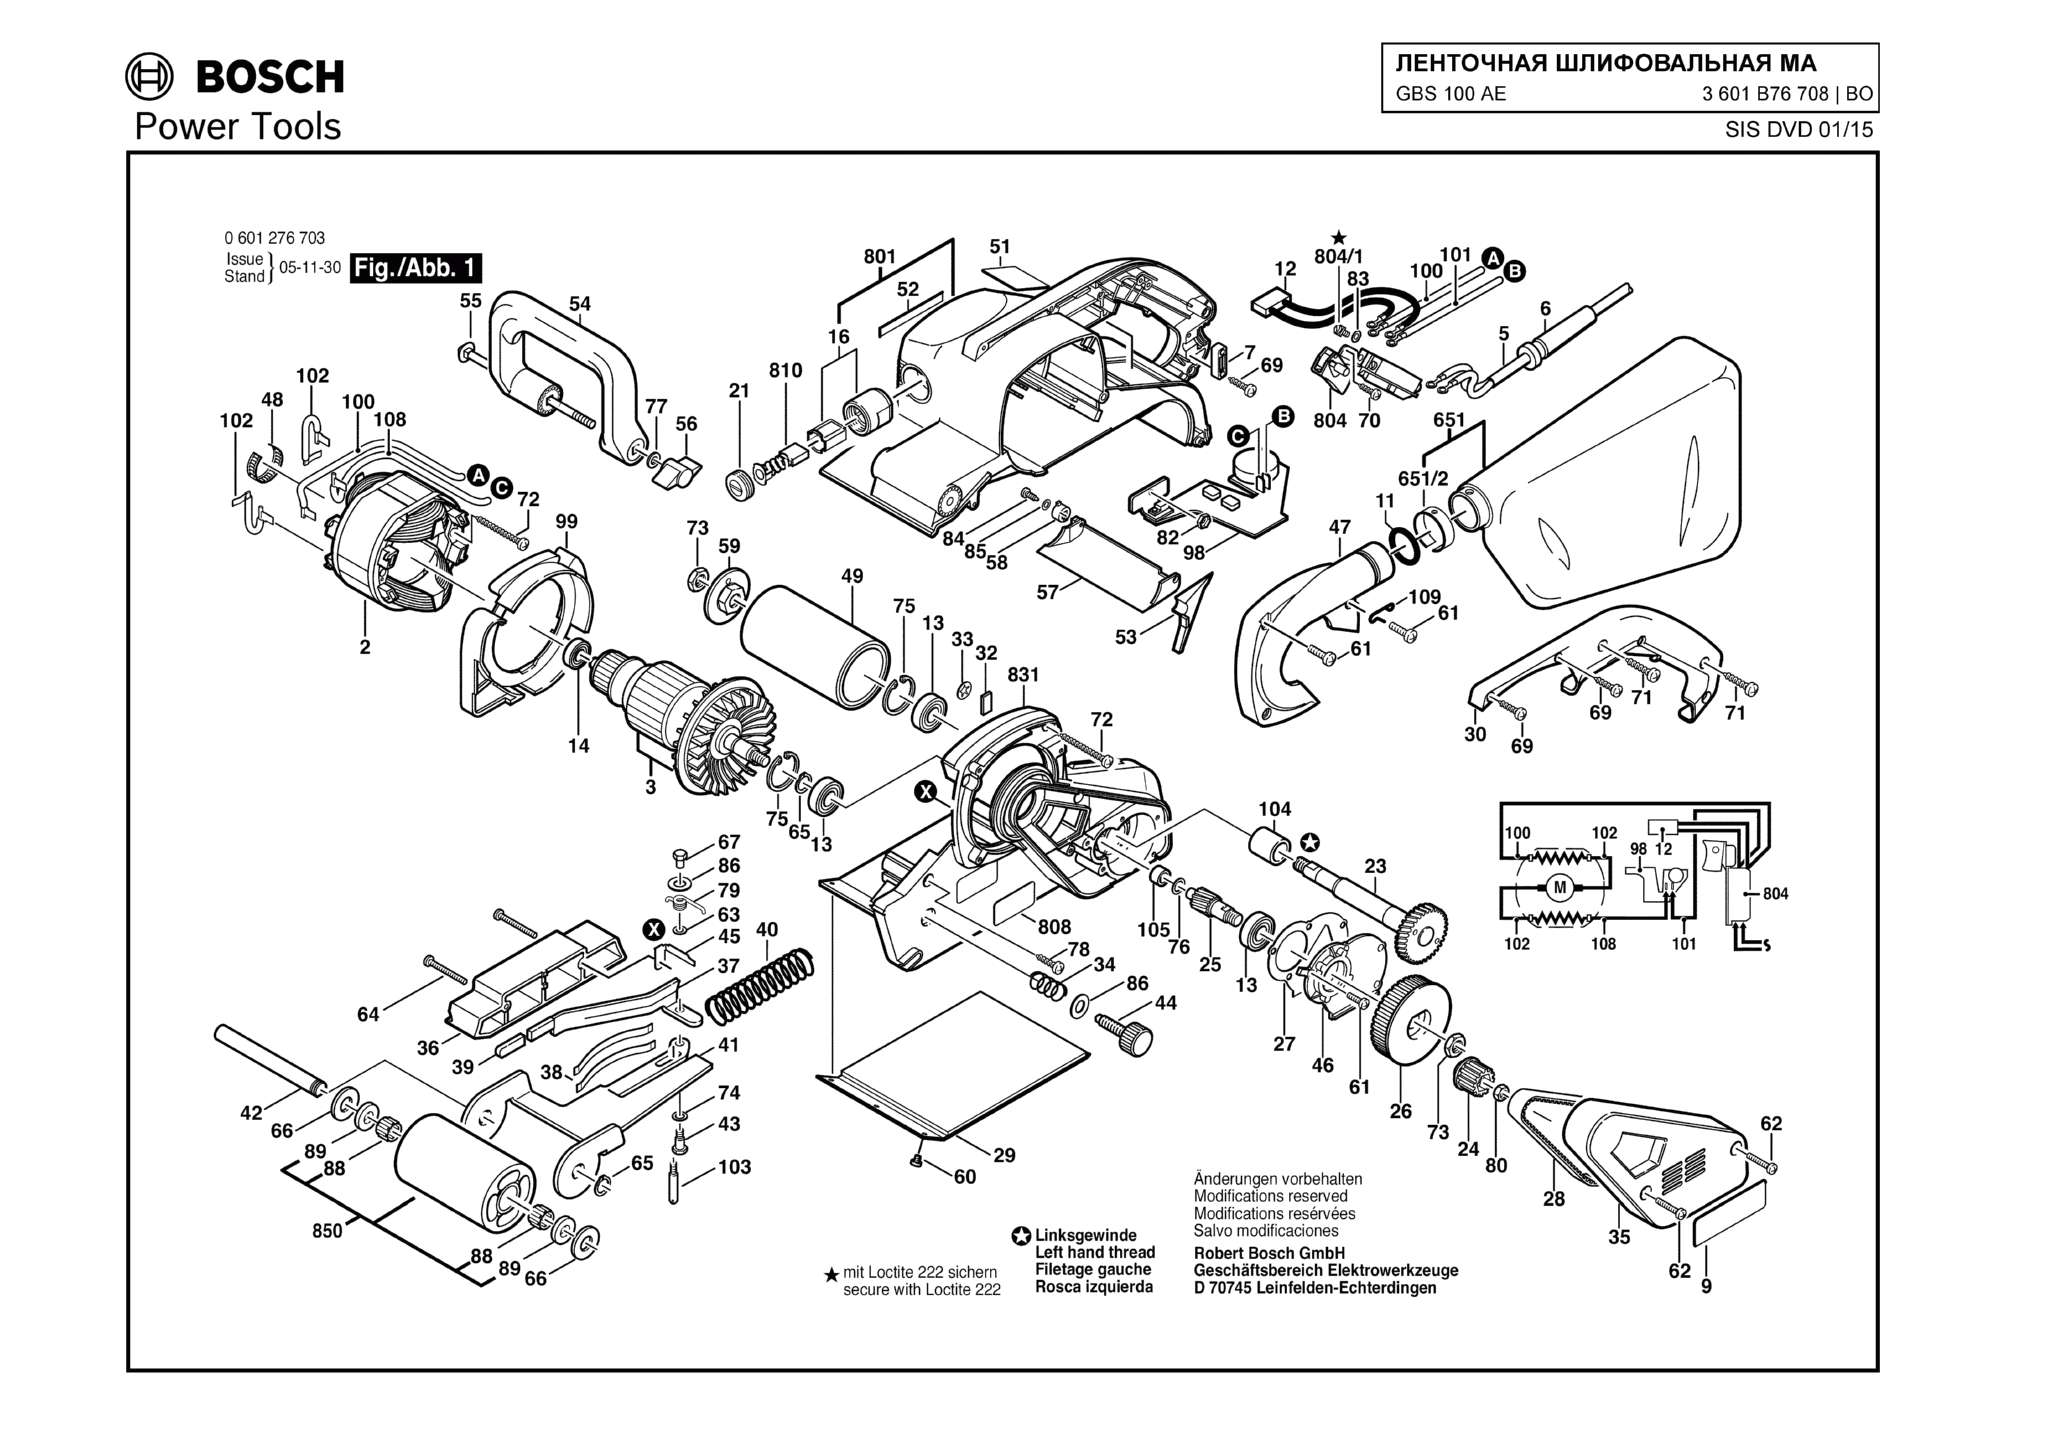 Запчасти, схема и деталировка Bosch GBS 100 AE (ТИП 3601B76708)